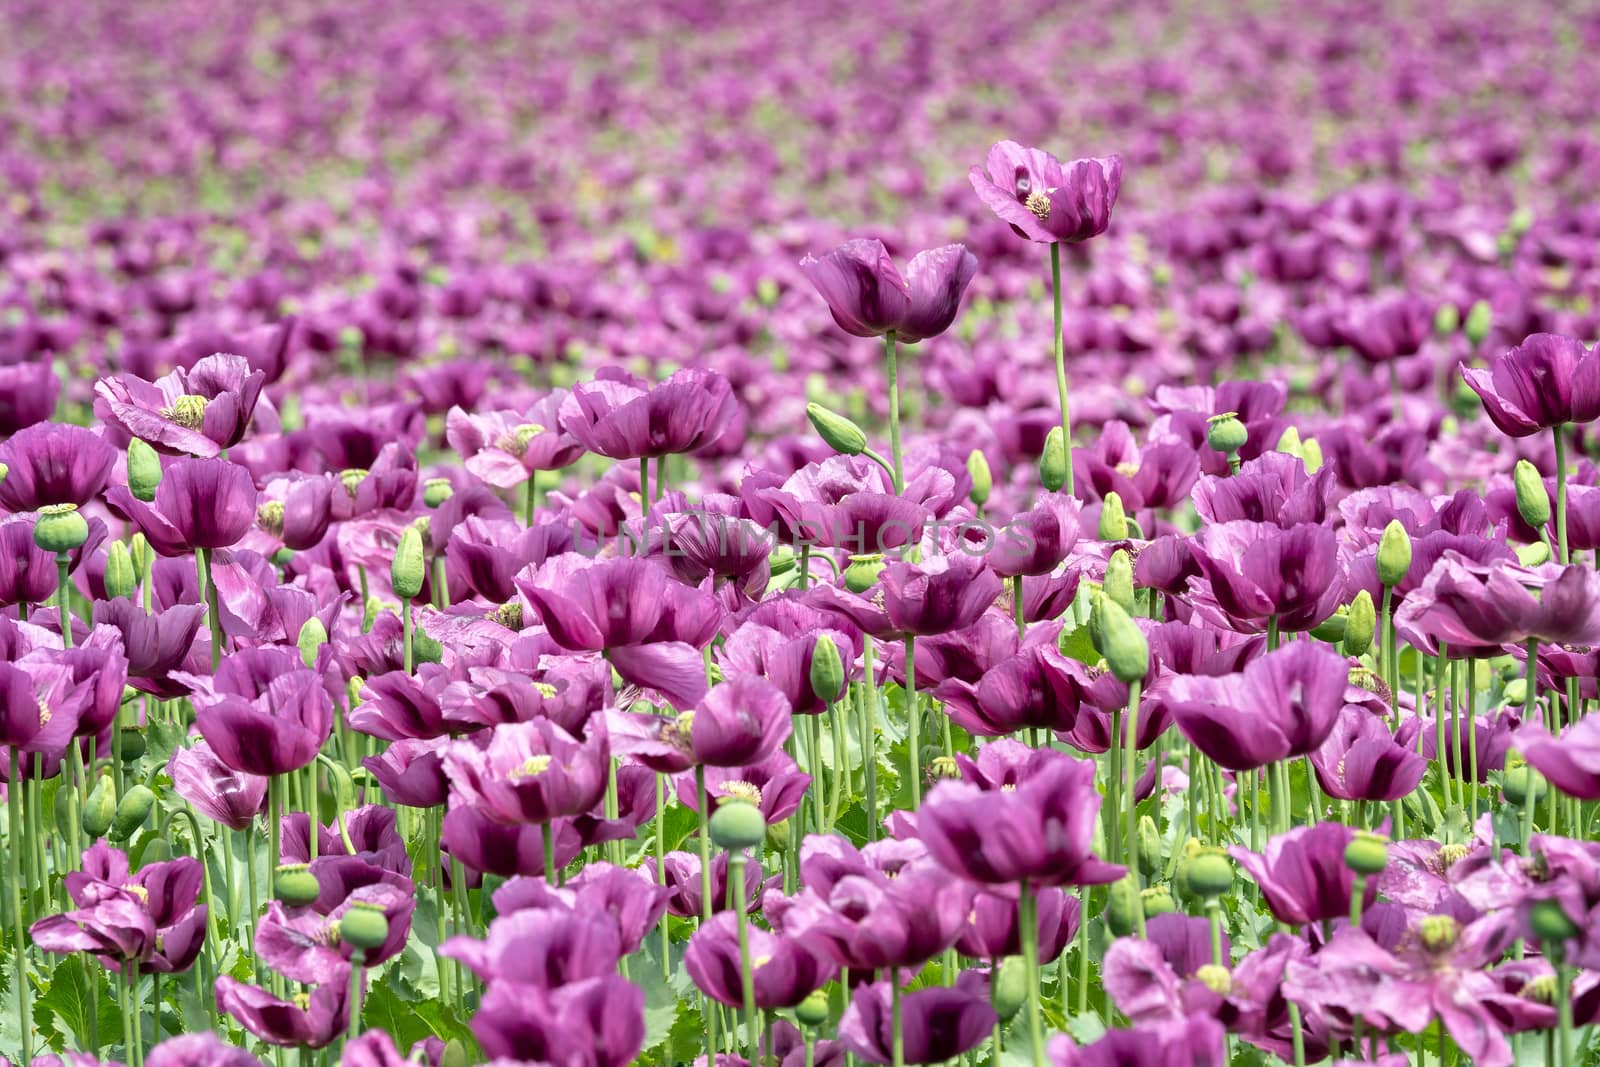 Purple poppy blossoms in a field. (Papaver somniferum). Poppies, by xtrekx